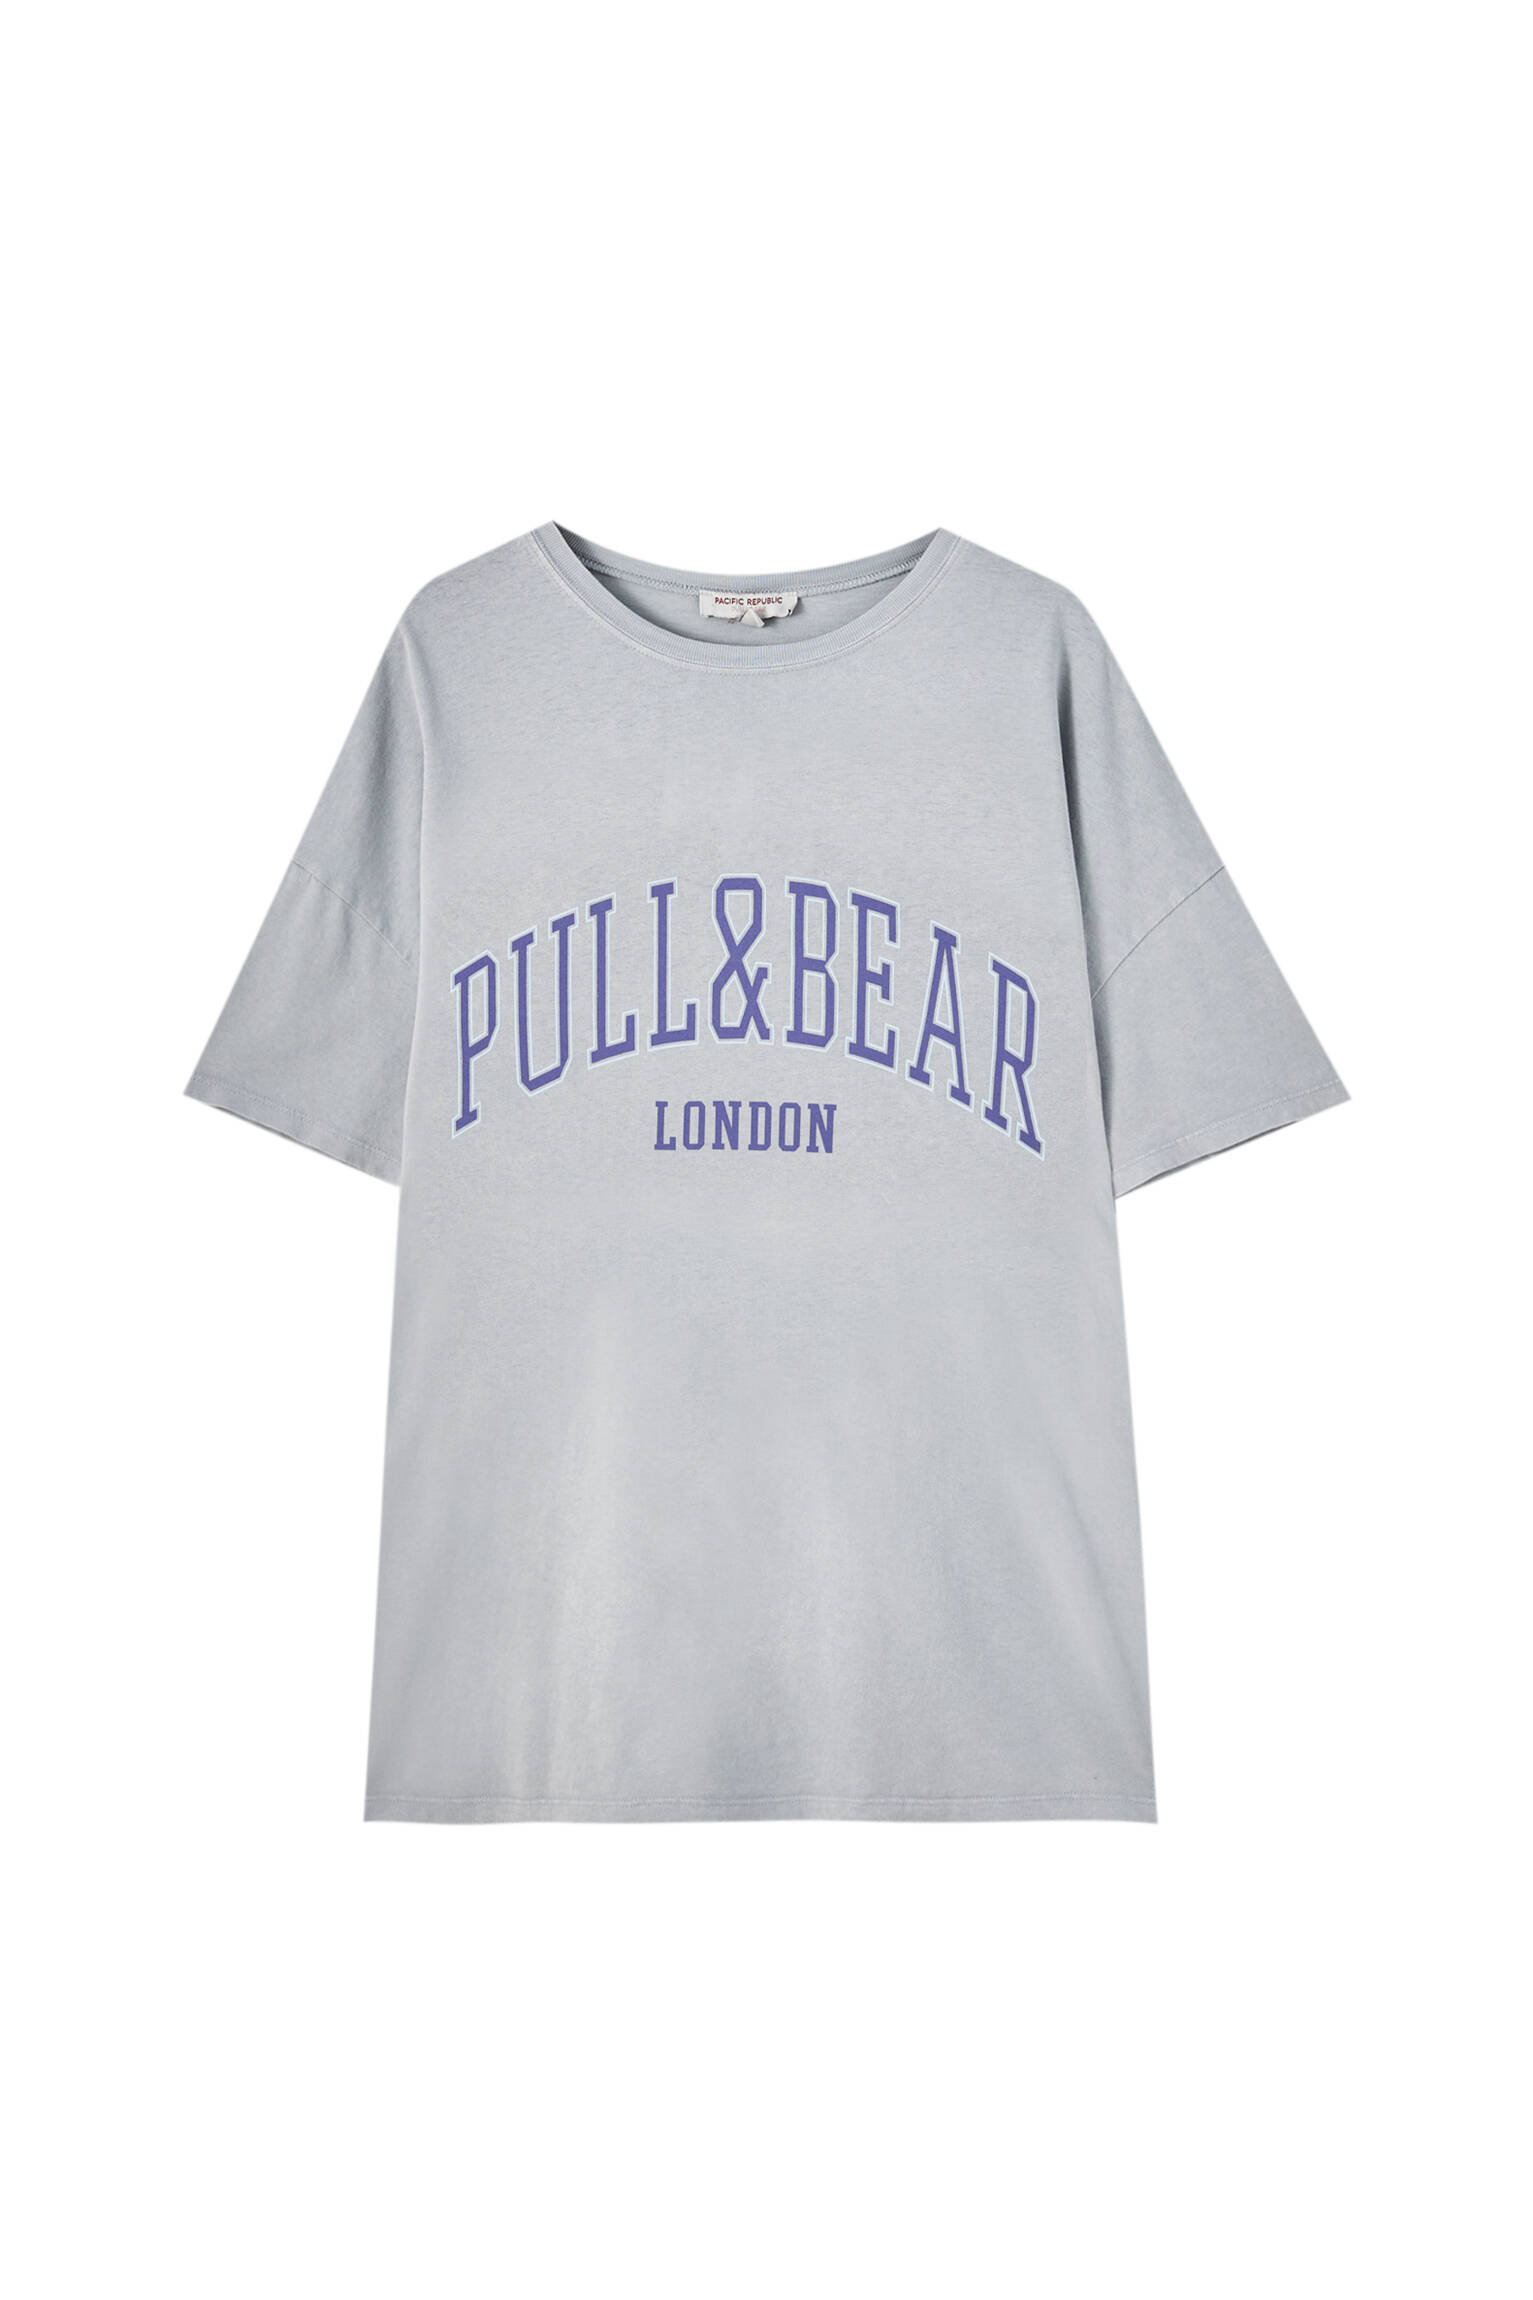 Pull&bear Femme T-shirt 100 % Coton à Col Rond Et Manches Courtes, Avec Logo Pull&bear Et Inscription London Contrastante Sur La Poitrine. Gris Ciment Xs